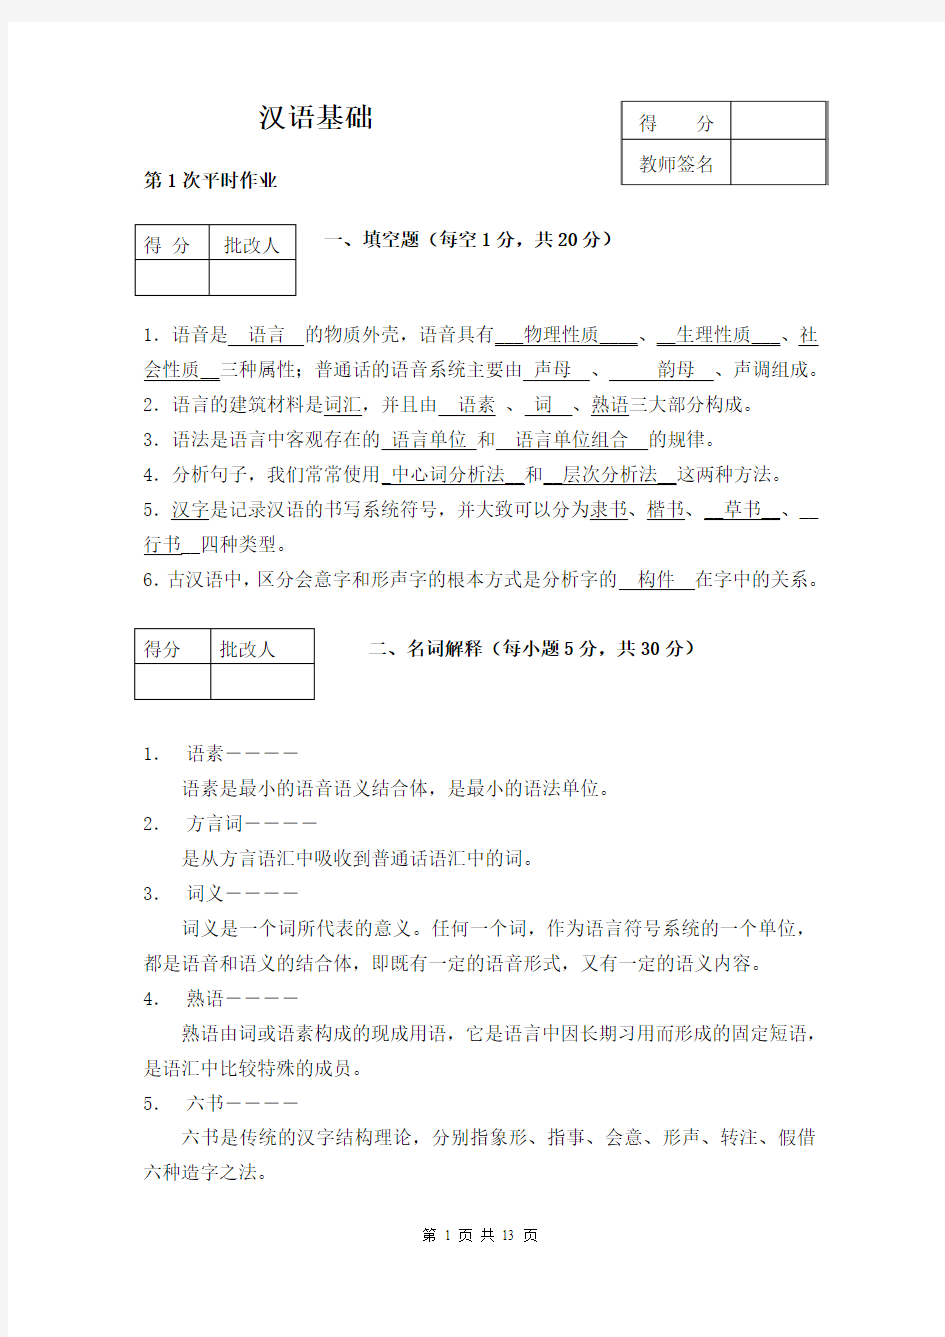 《汉语基础》平时作业答案(作业用)